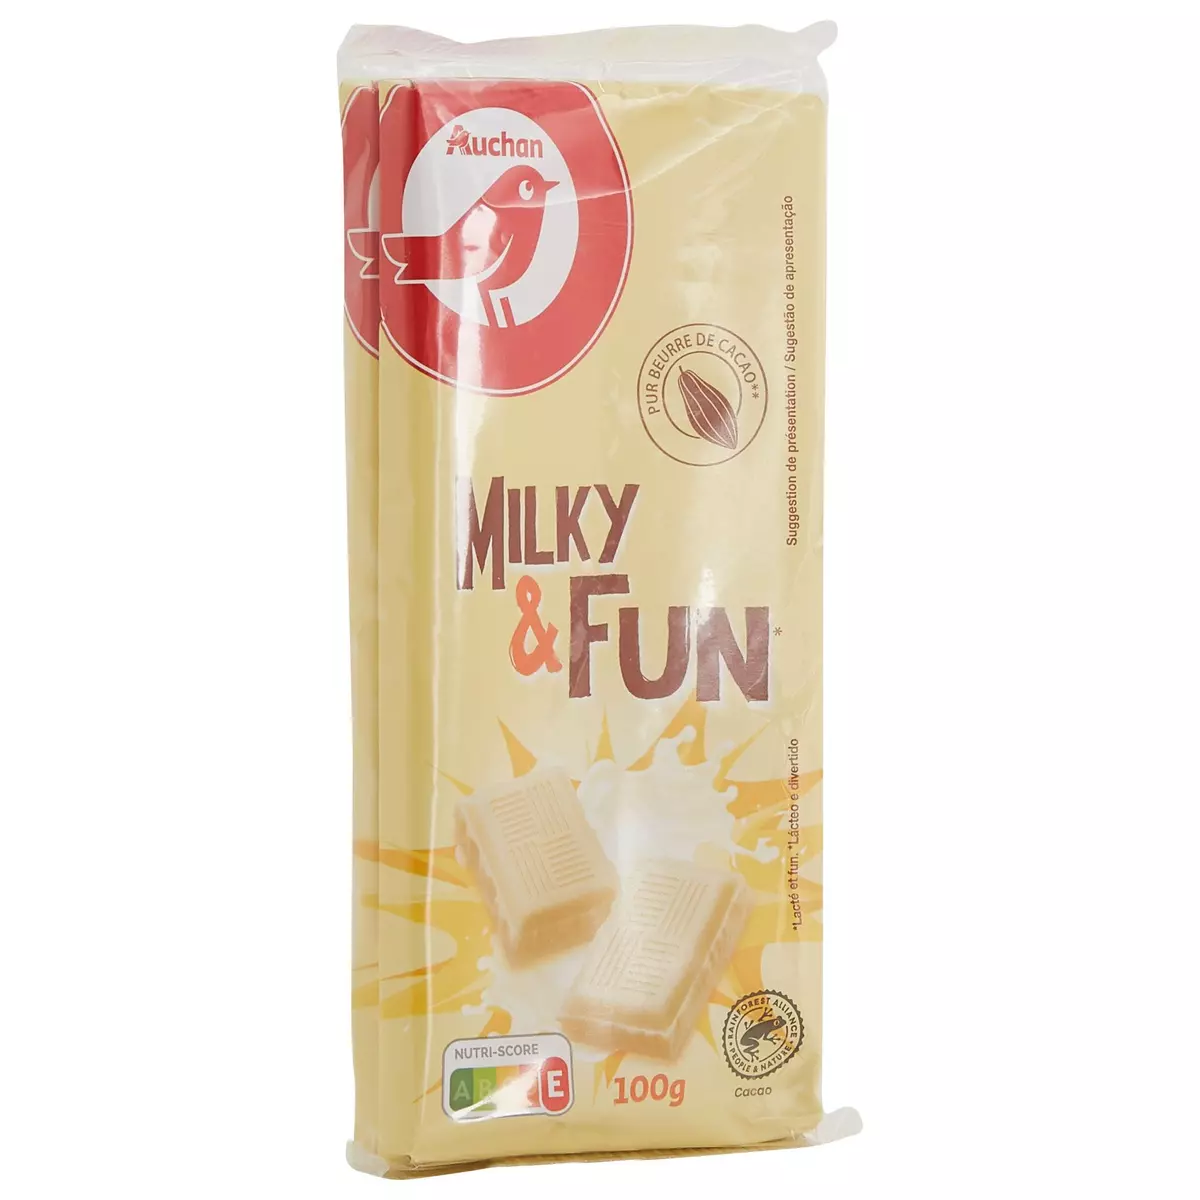 AUCHAN Milky&Fun tablette de chocolat blanc 2 pièces 2x100g